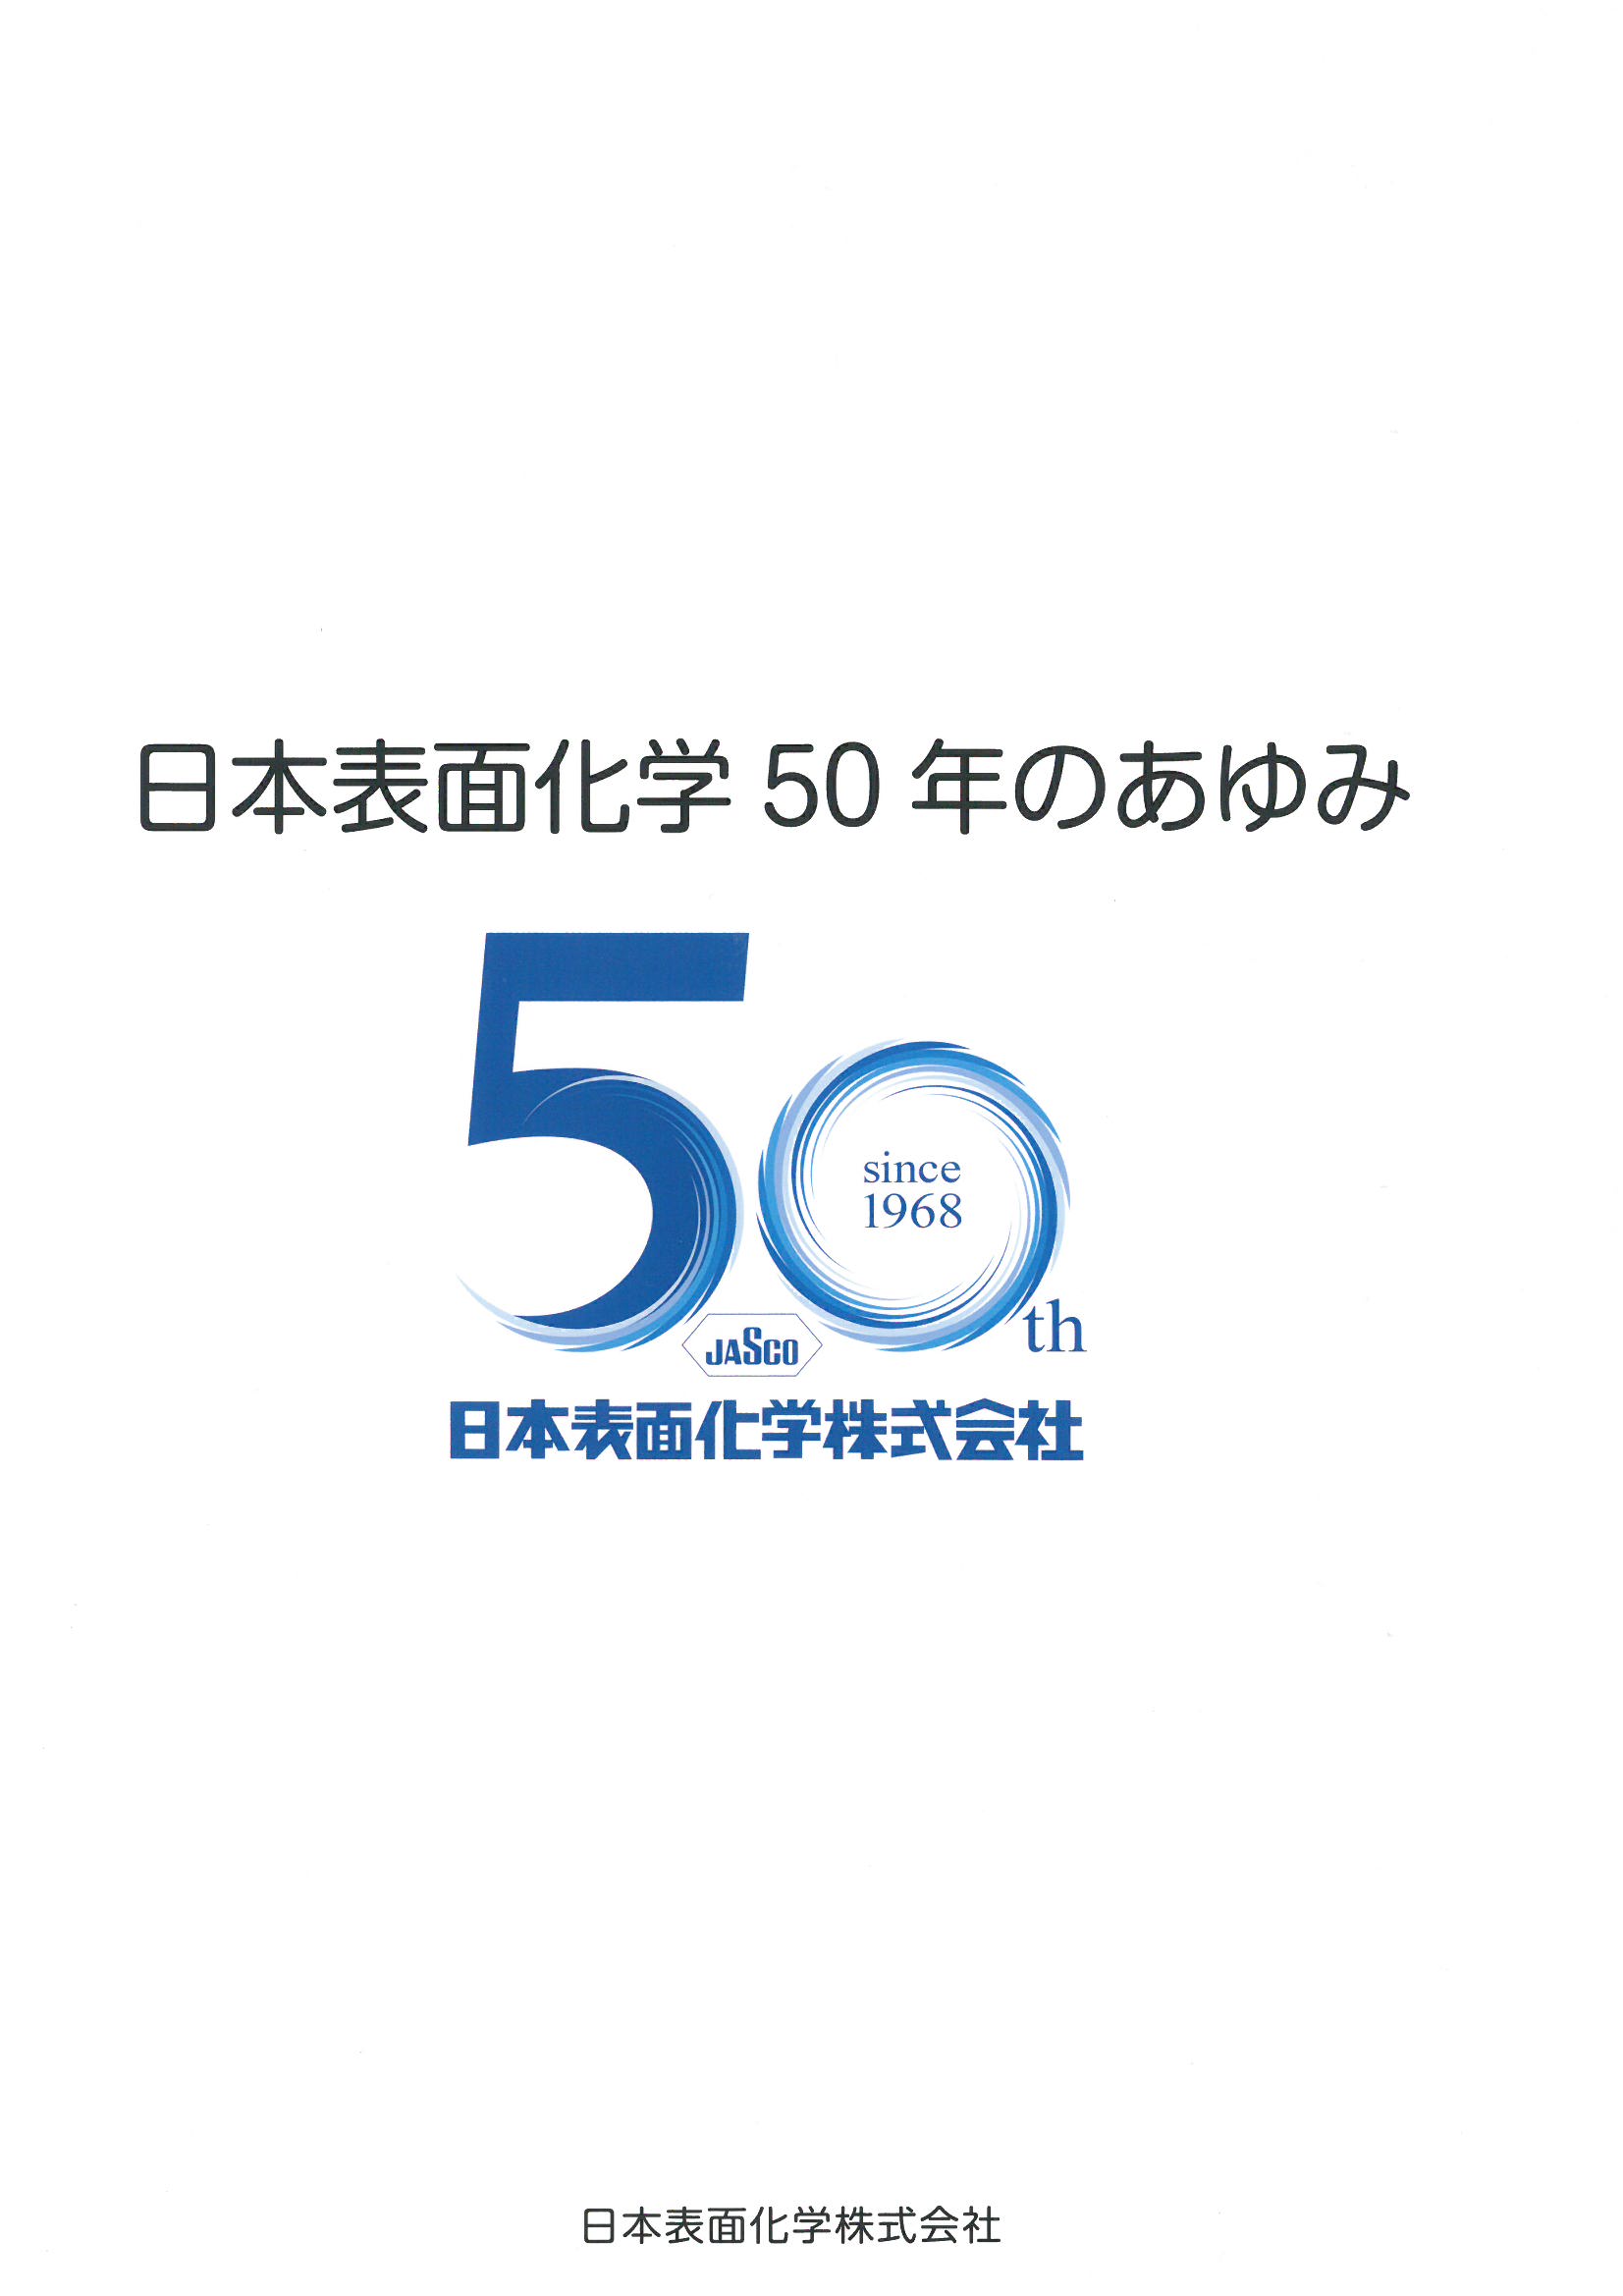 （社史表紙）日本表面化学50年のあゆみ